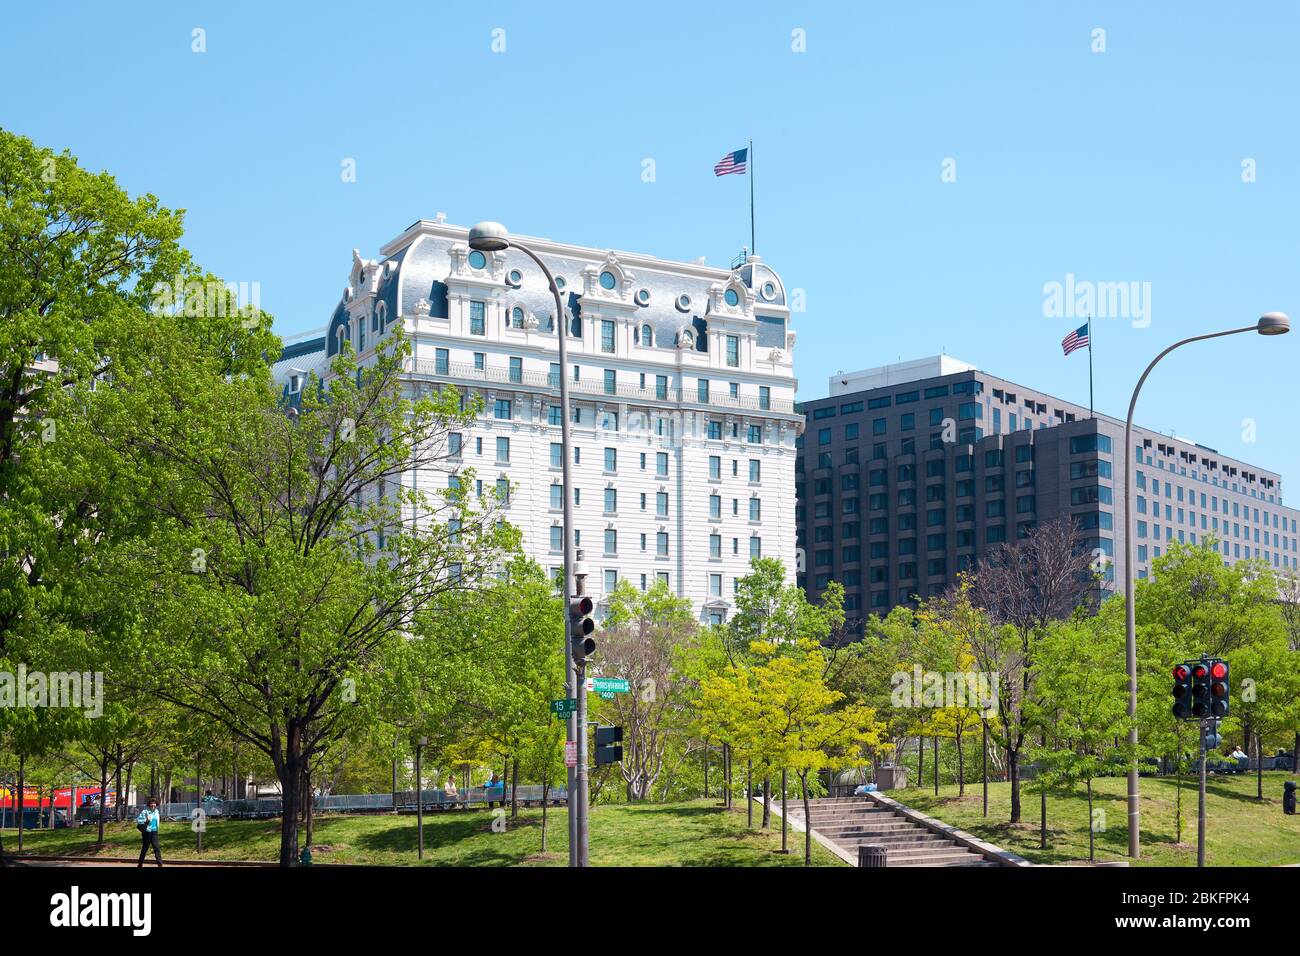 Washington D.C., United States - Cityscape of Pershing Park. Stock Photo